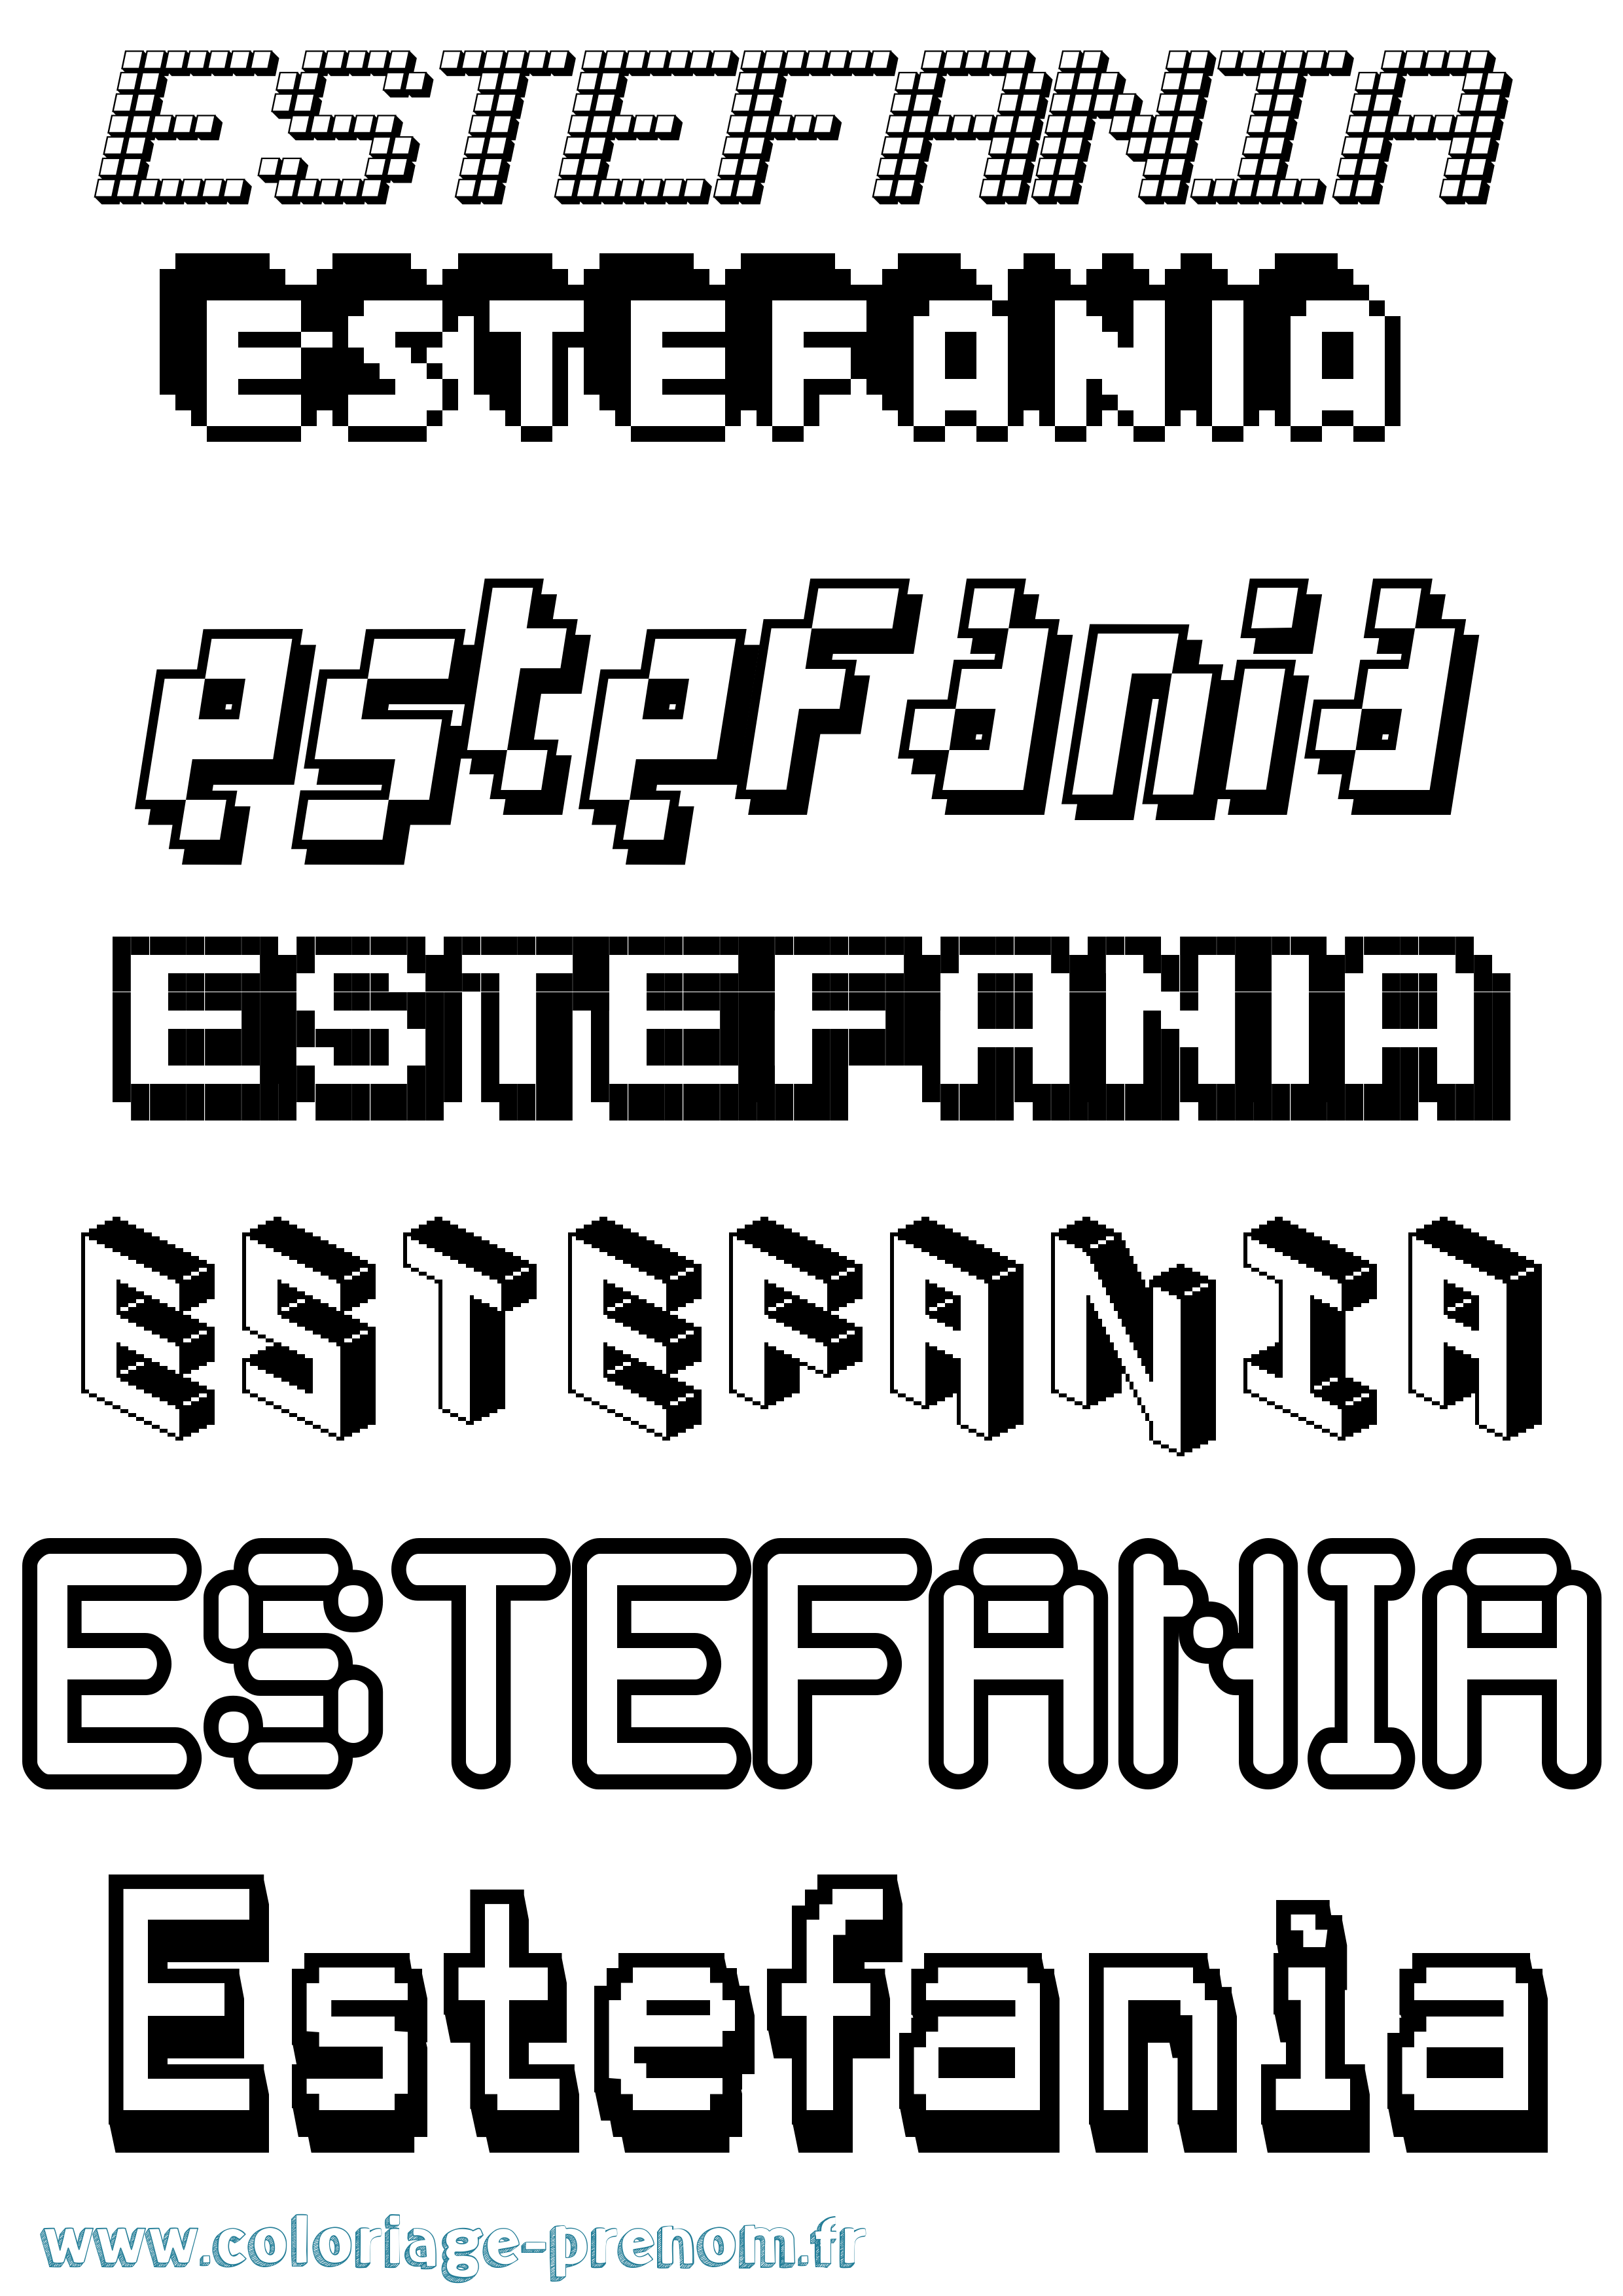 Coloriage prénom Estefanía Pixel